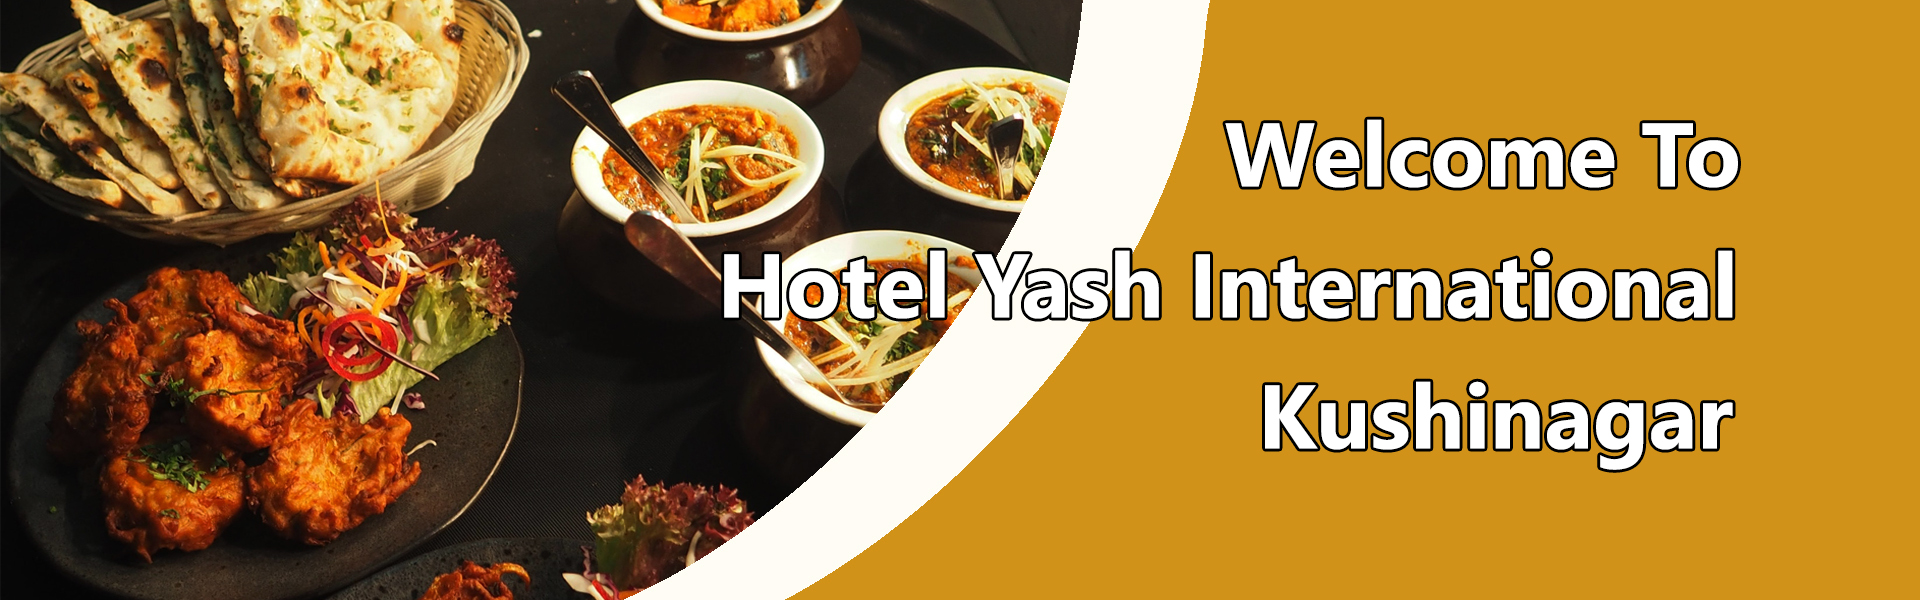 Welcome To Hotel Yash International Kushinagar 